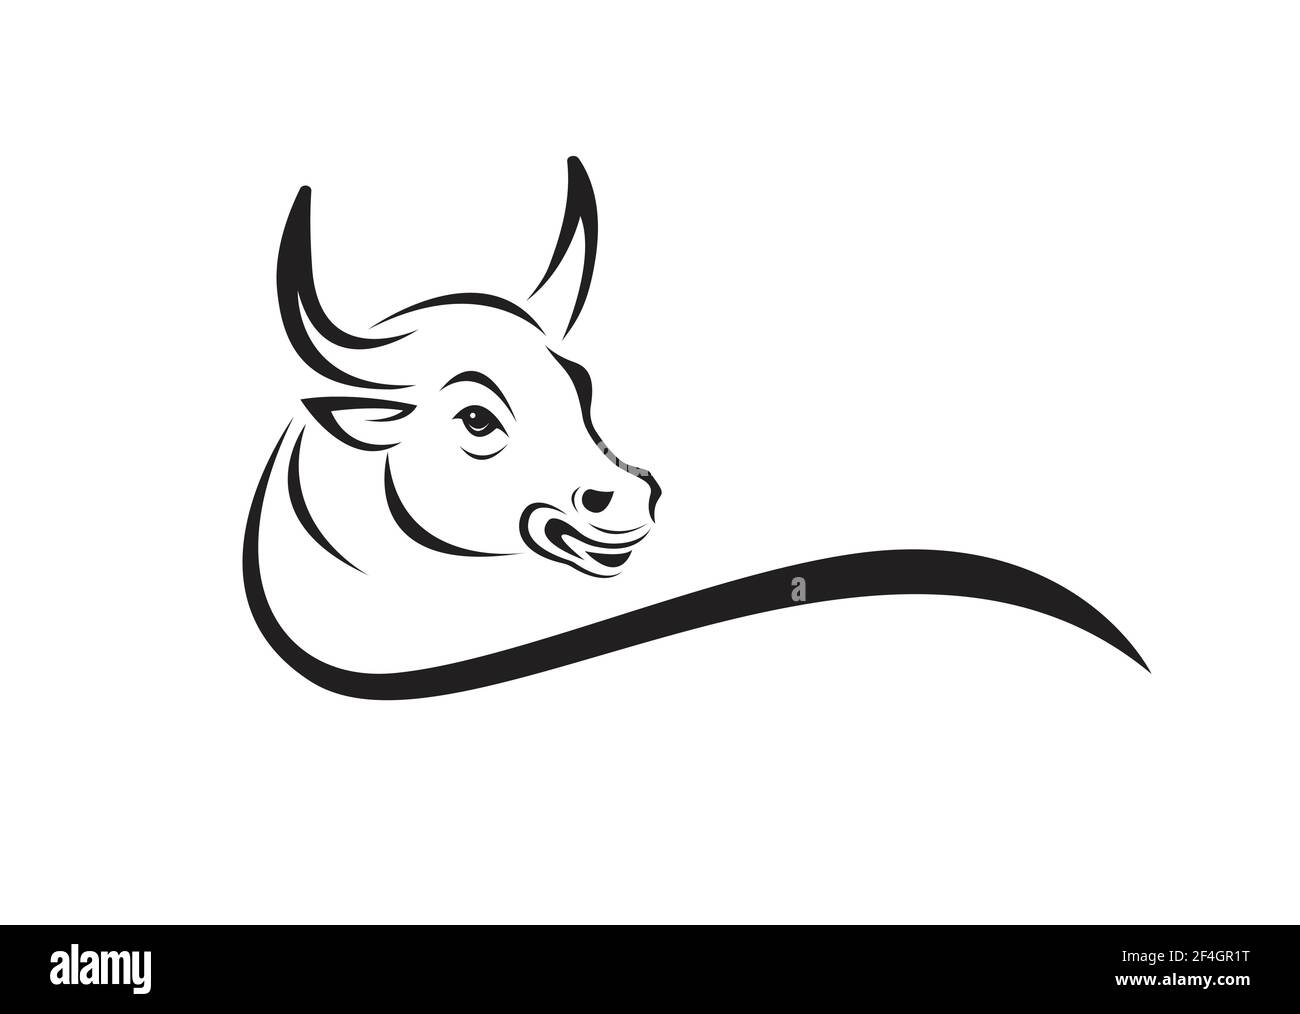 Vecteur d'une tête de taureau sur fond blanc. Animaux sauvages. Illustration vectorielle superposée facile à modifier. Illustration de Vecteur